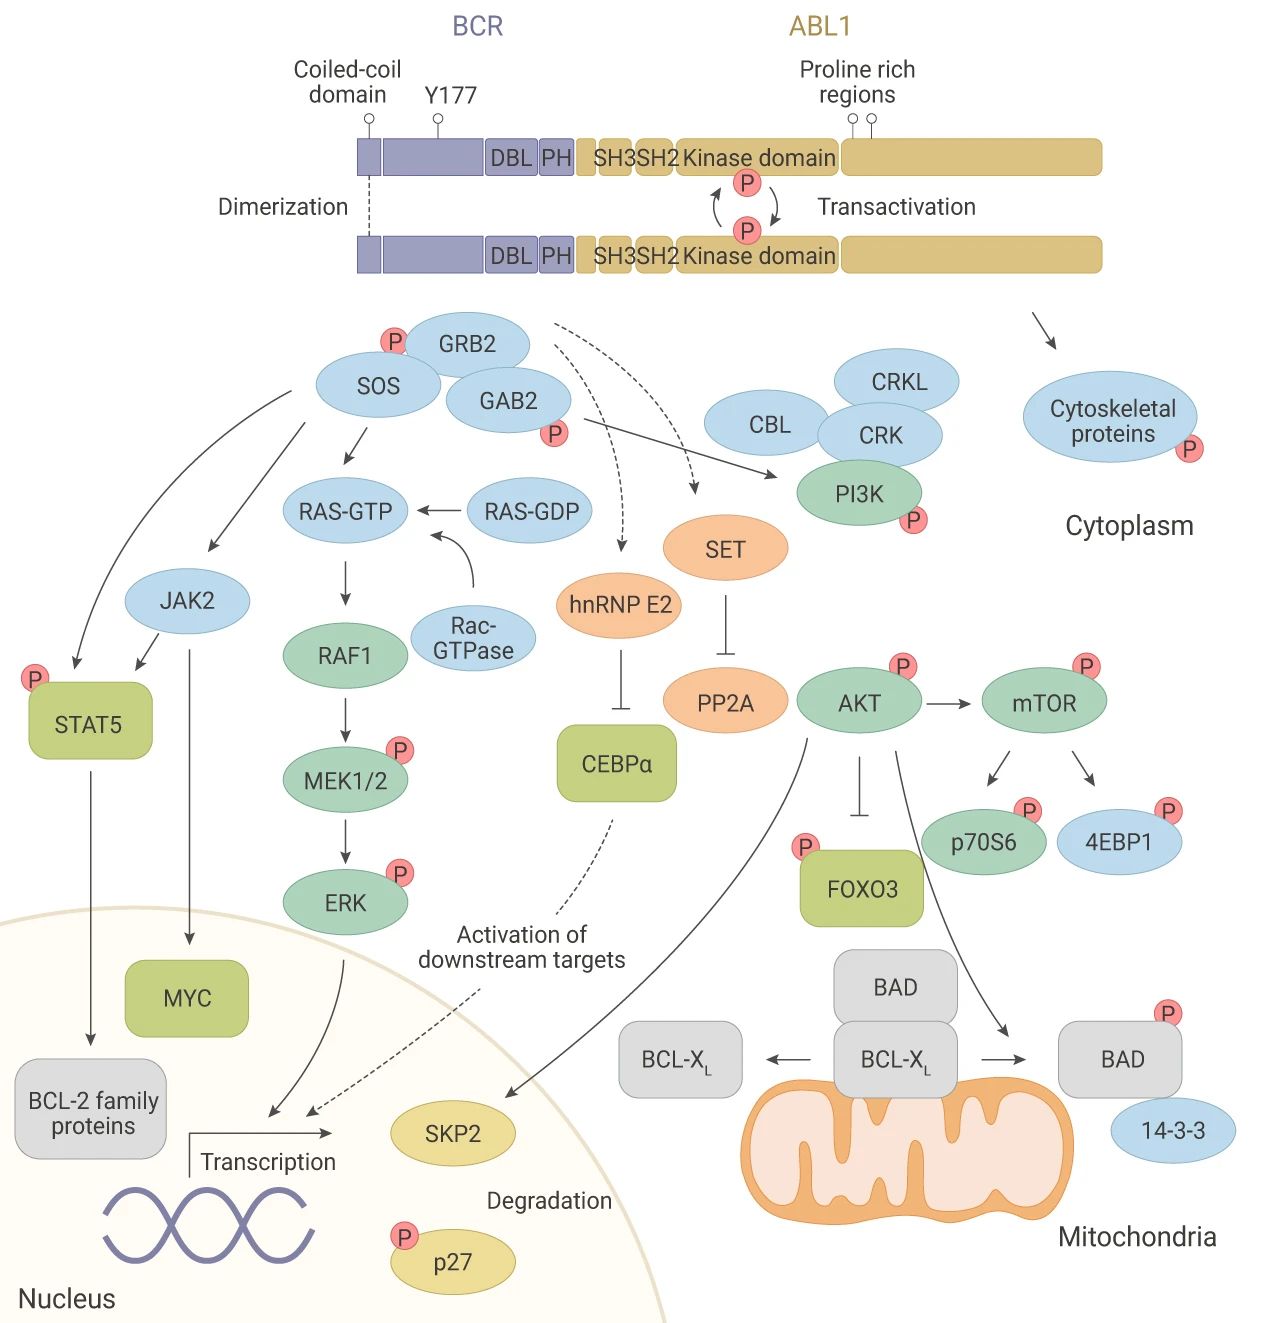 图 3. BCR-ABL1 蛋白激活胞内复杂的信号通路[4]